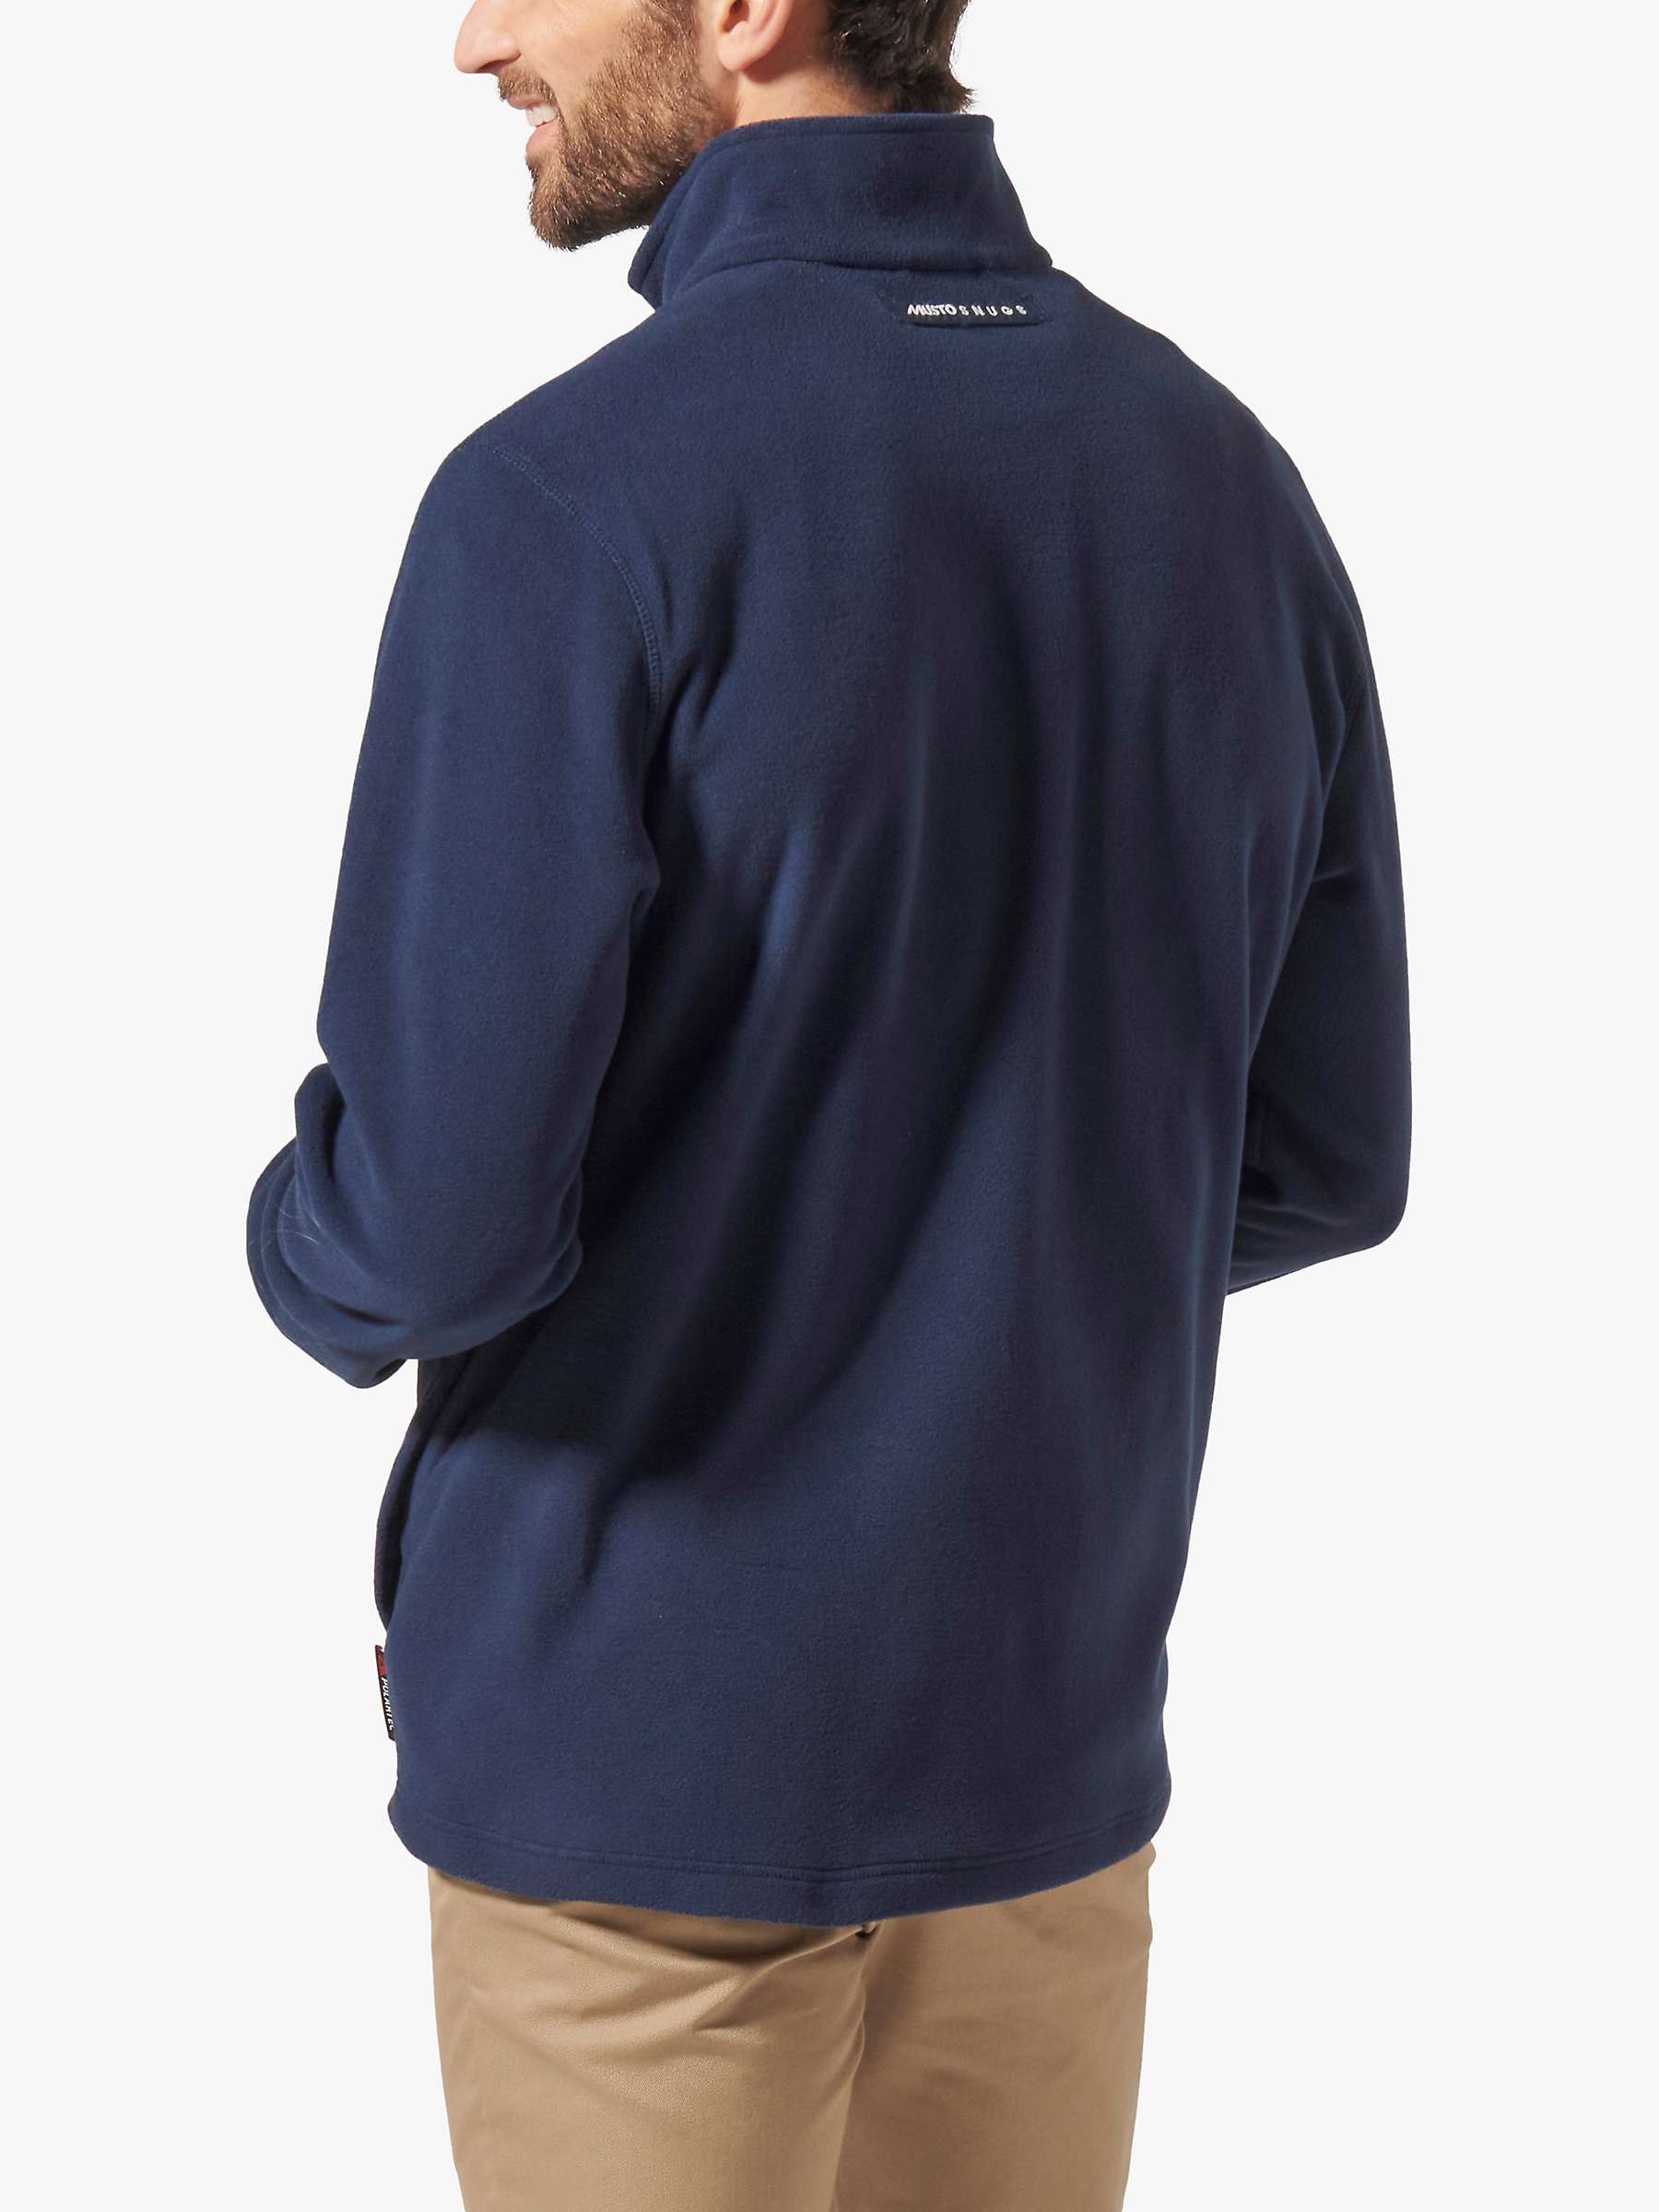 Buy Musto Snug Fleece Top, Navy Online at johnlewis.com